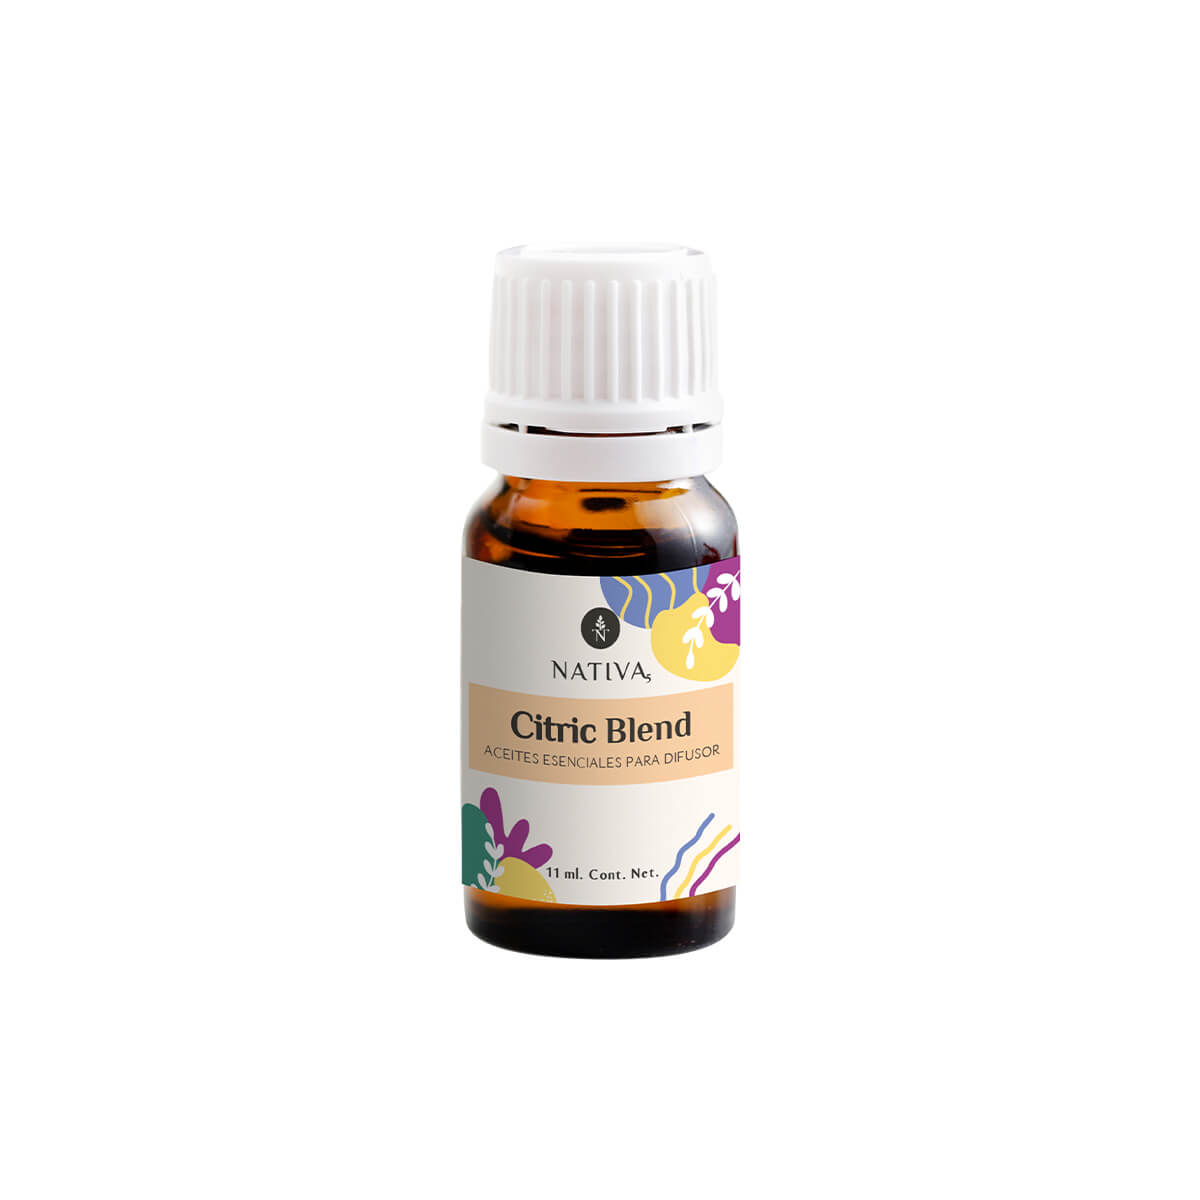 Citric Blend - Difusor 11 ml. Nativa5